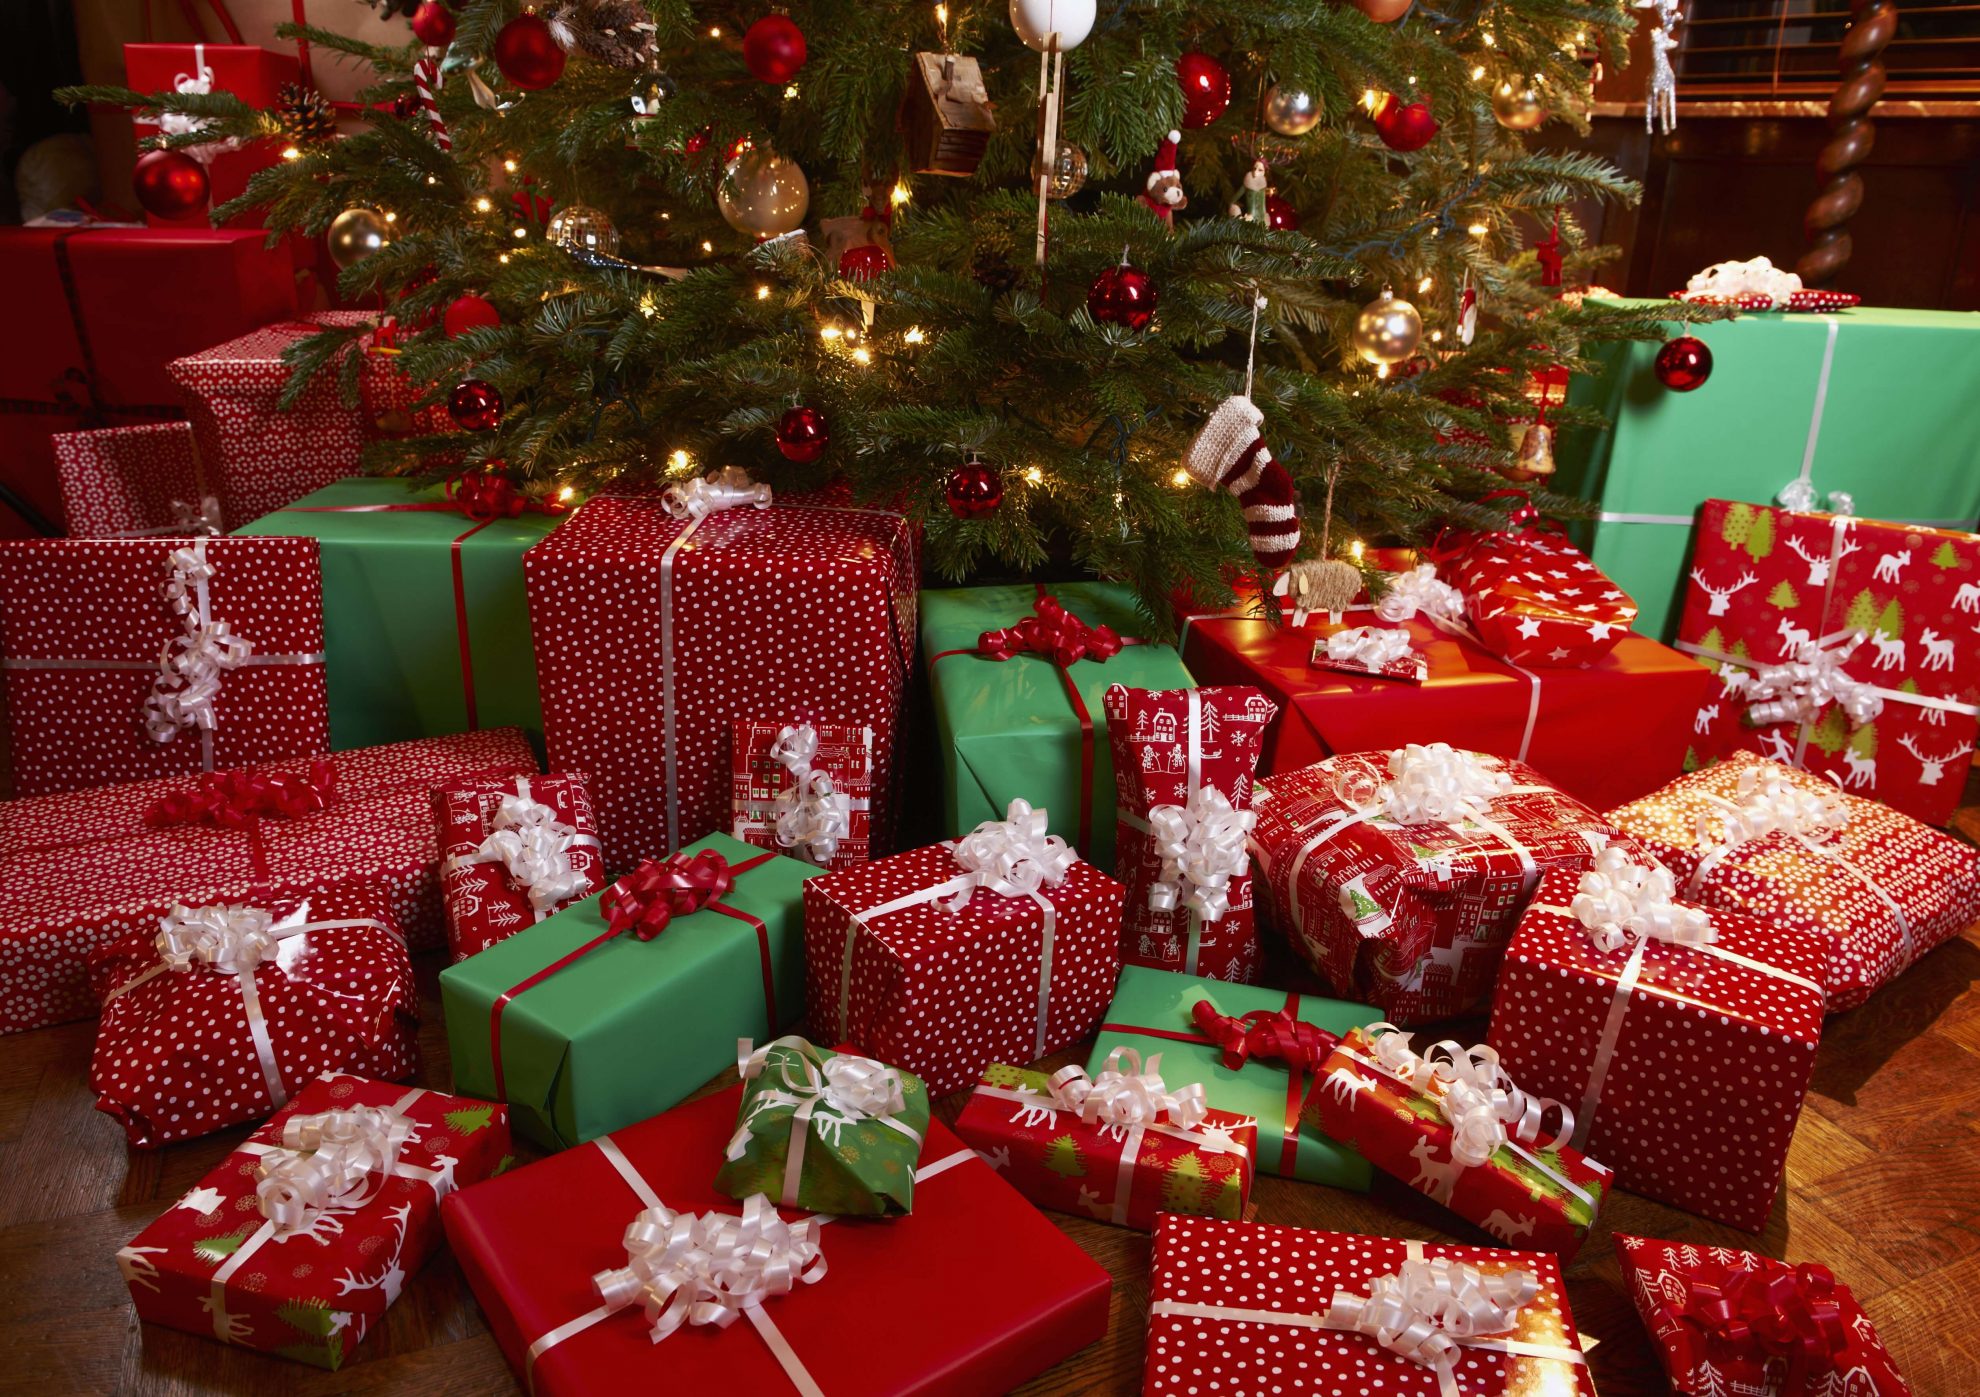 Lietuvos gyventojai Kalėdų dovanoms šiemet ketina išleisti kiek daugiau pinigų nei pernai, tačiau jie vis dar nėra linkę joms taupyti iš anksto